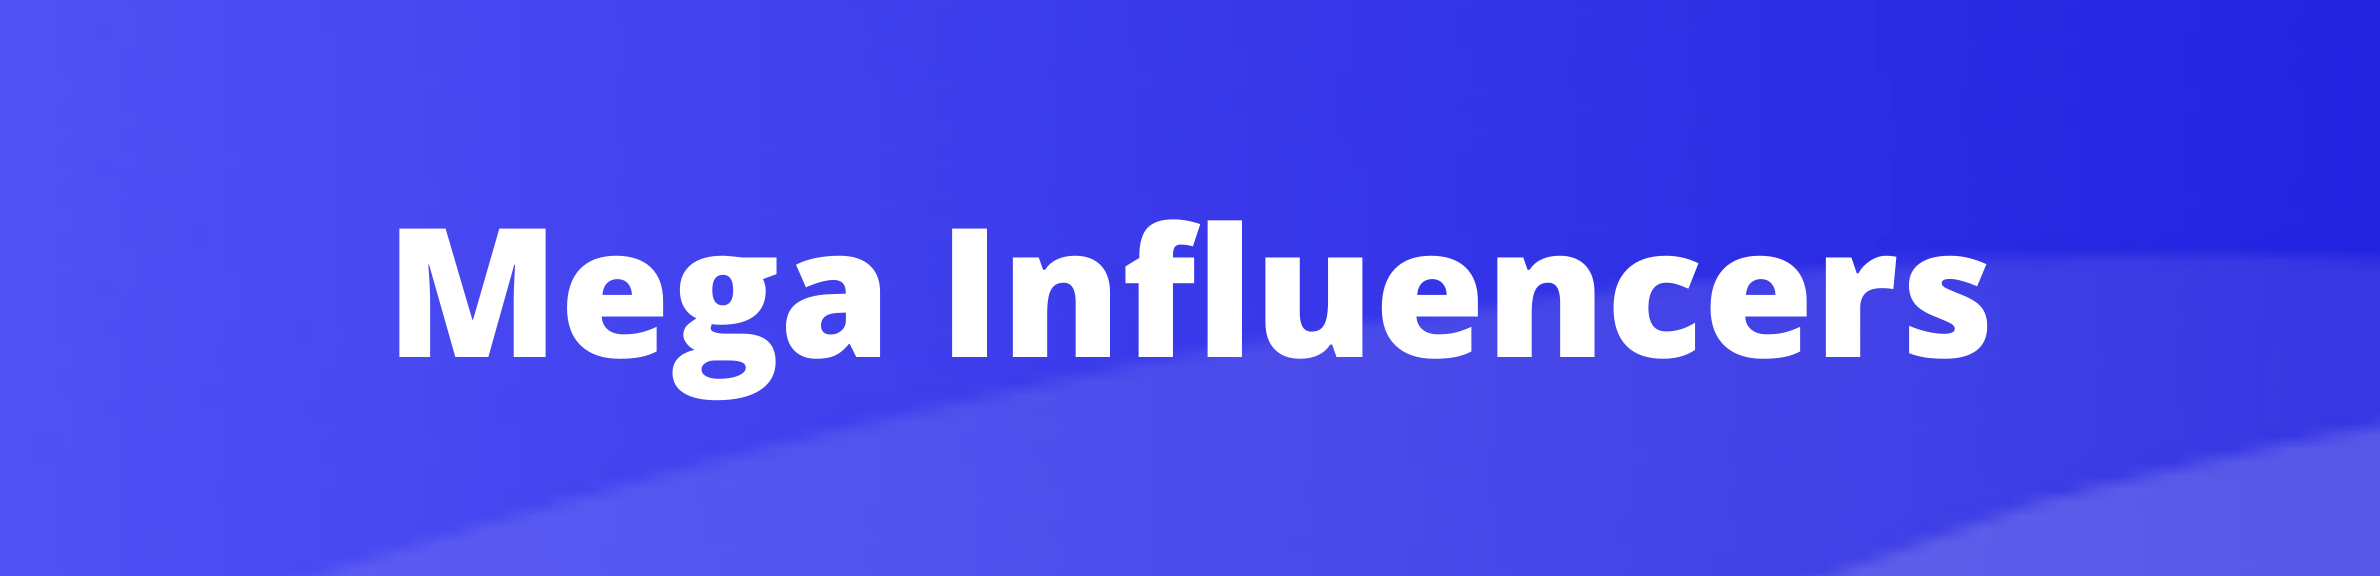 Upfluence mega influencers